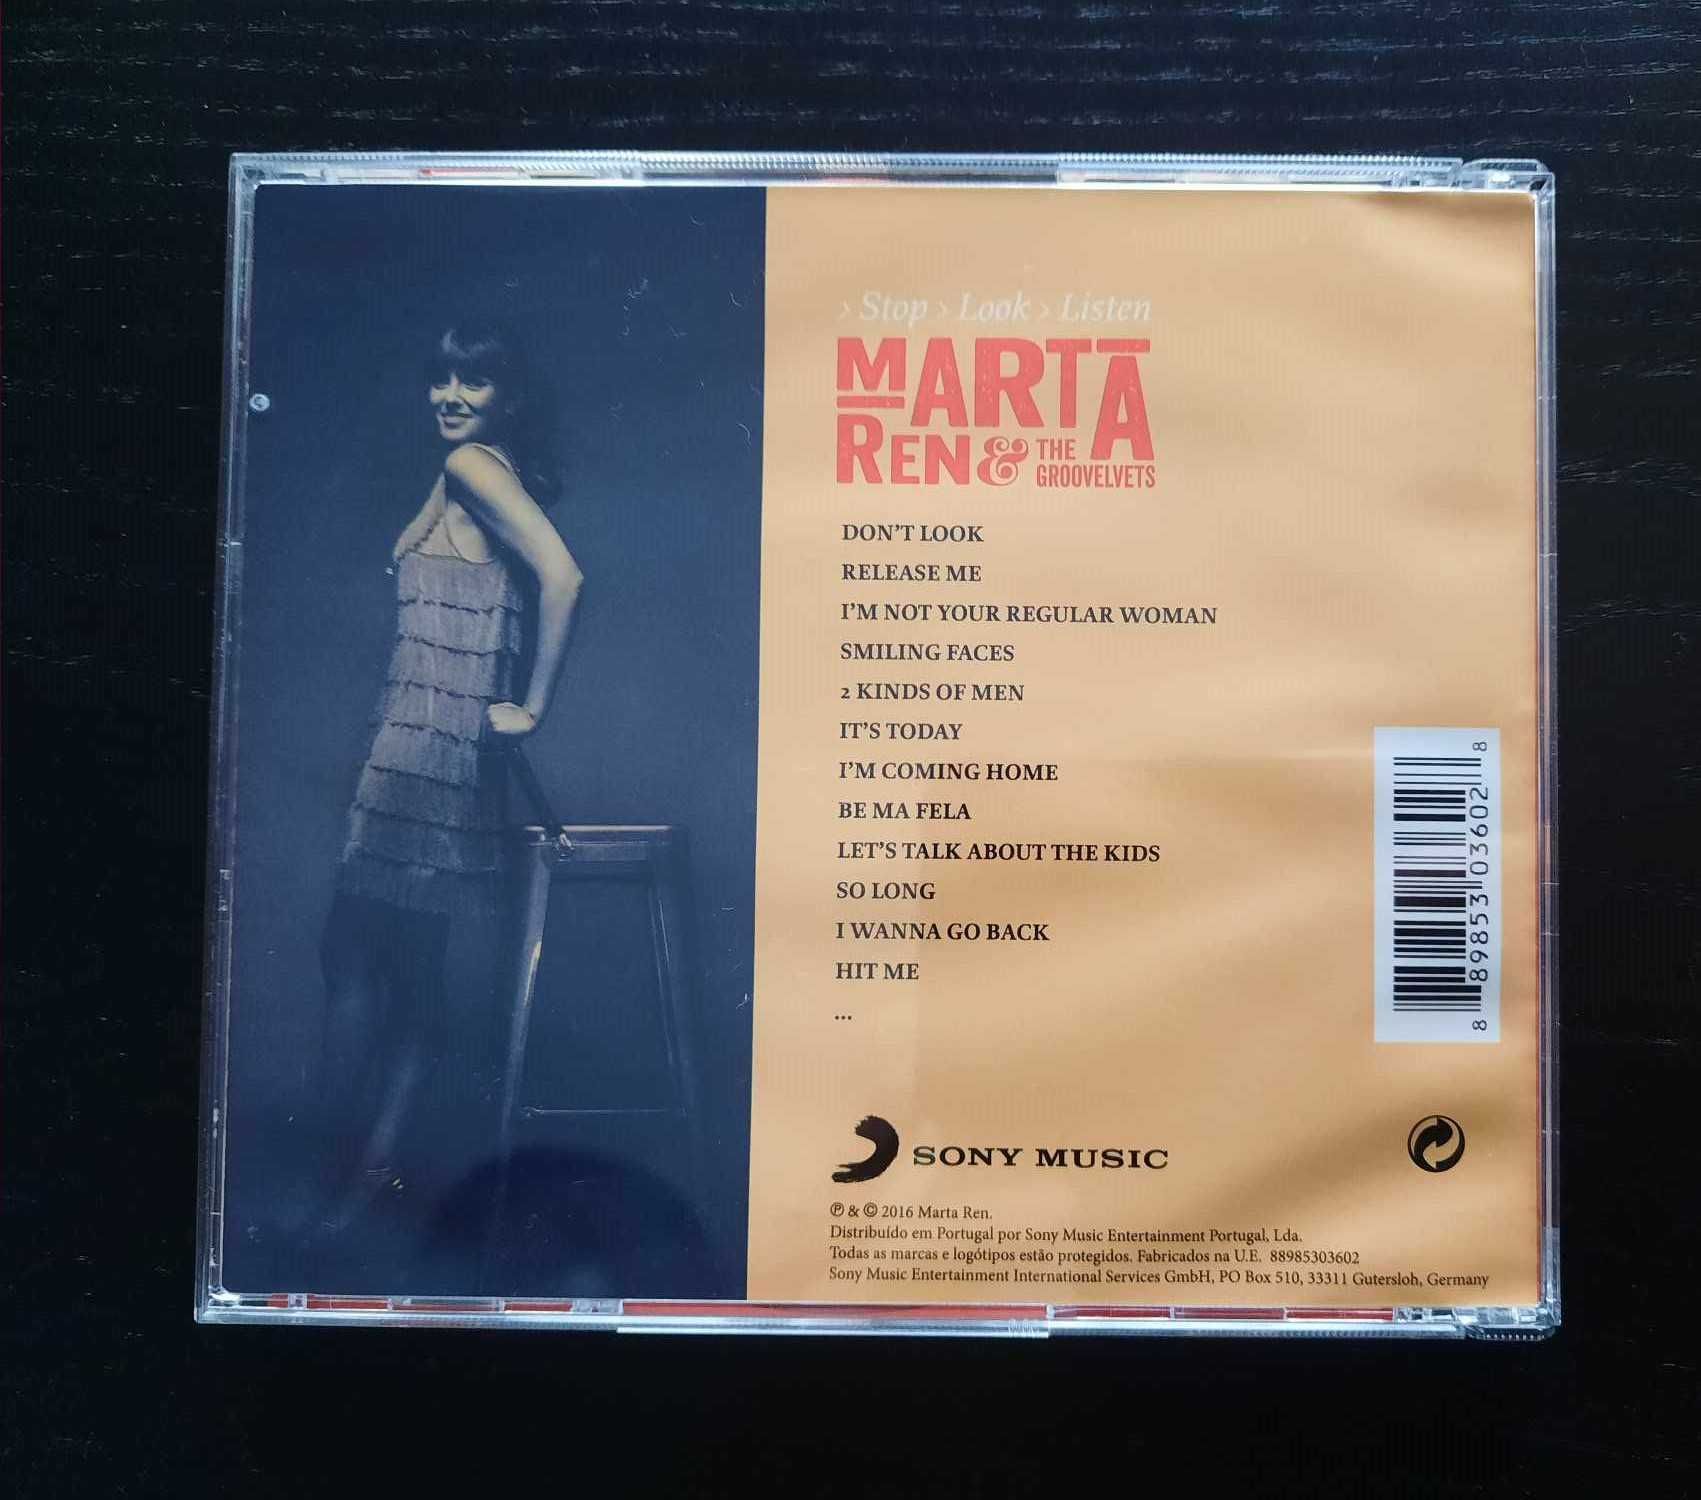 Marta Ren & The Groovelvets - Stop Look Listen